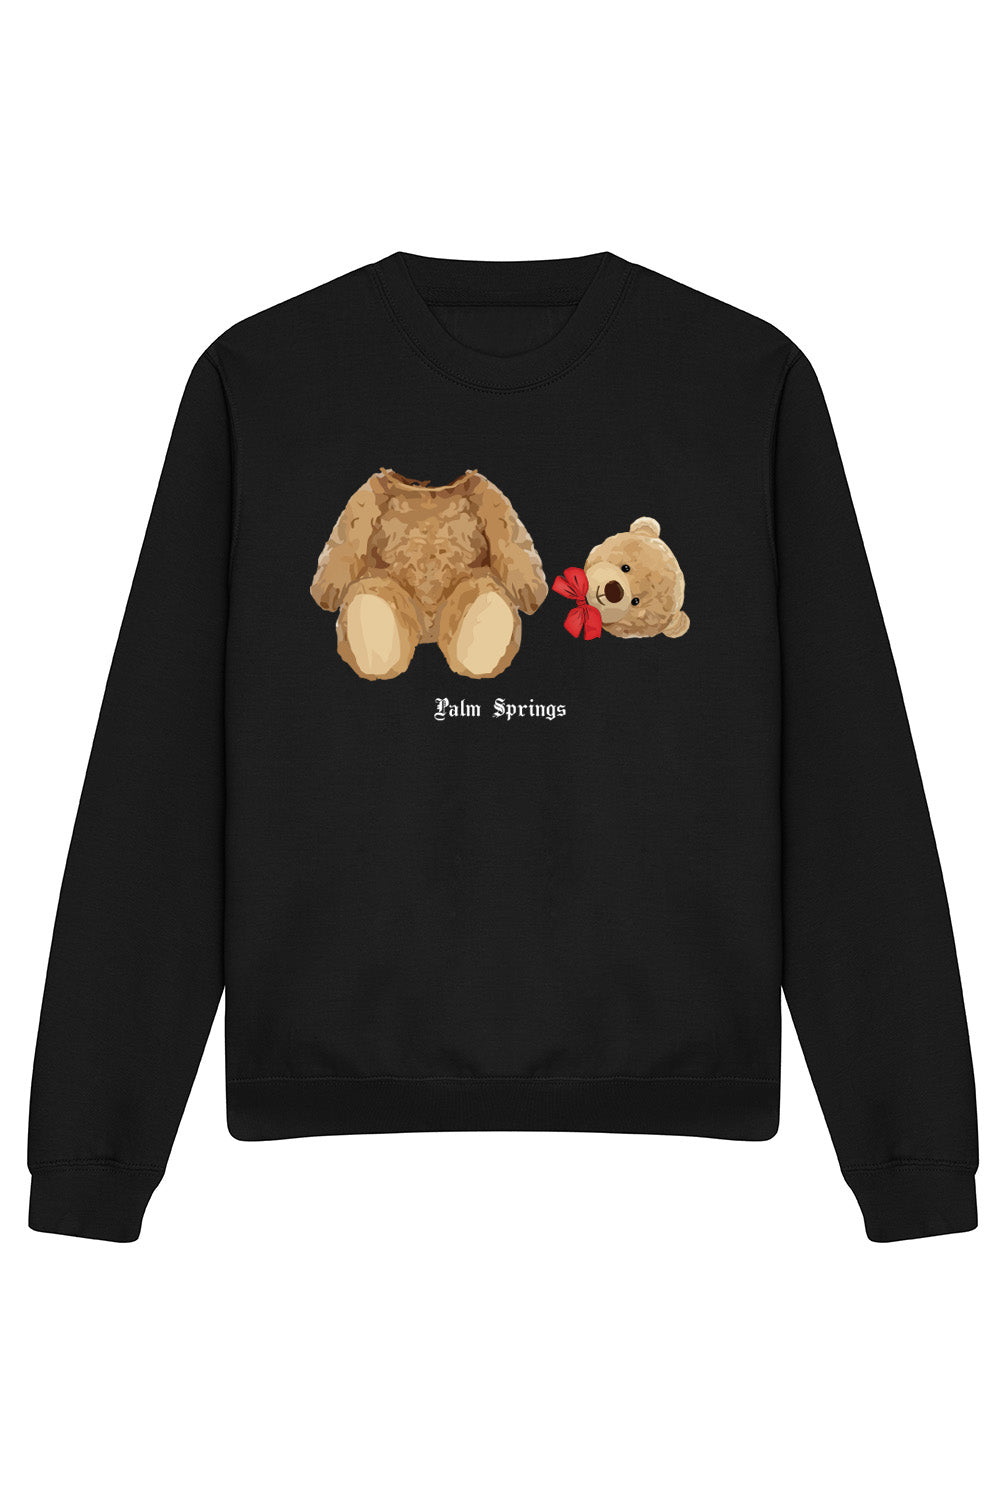 Palm Springs Teddy Sweatshirt In Black (Custom Pack)